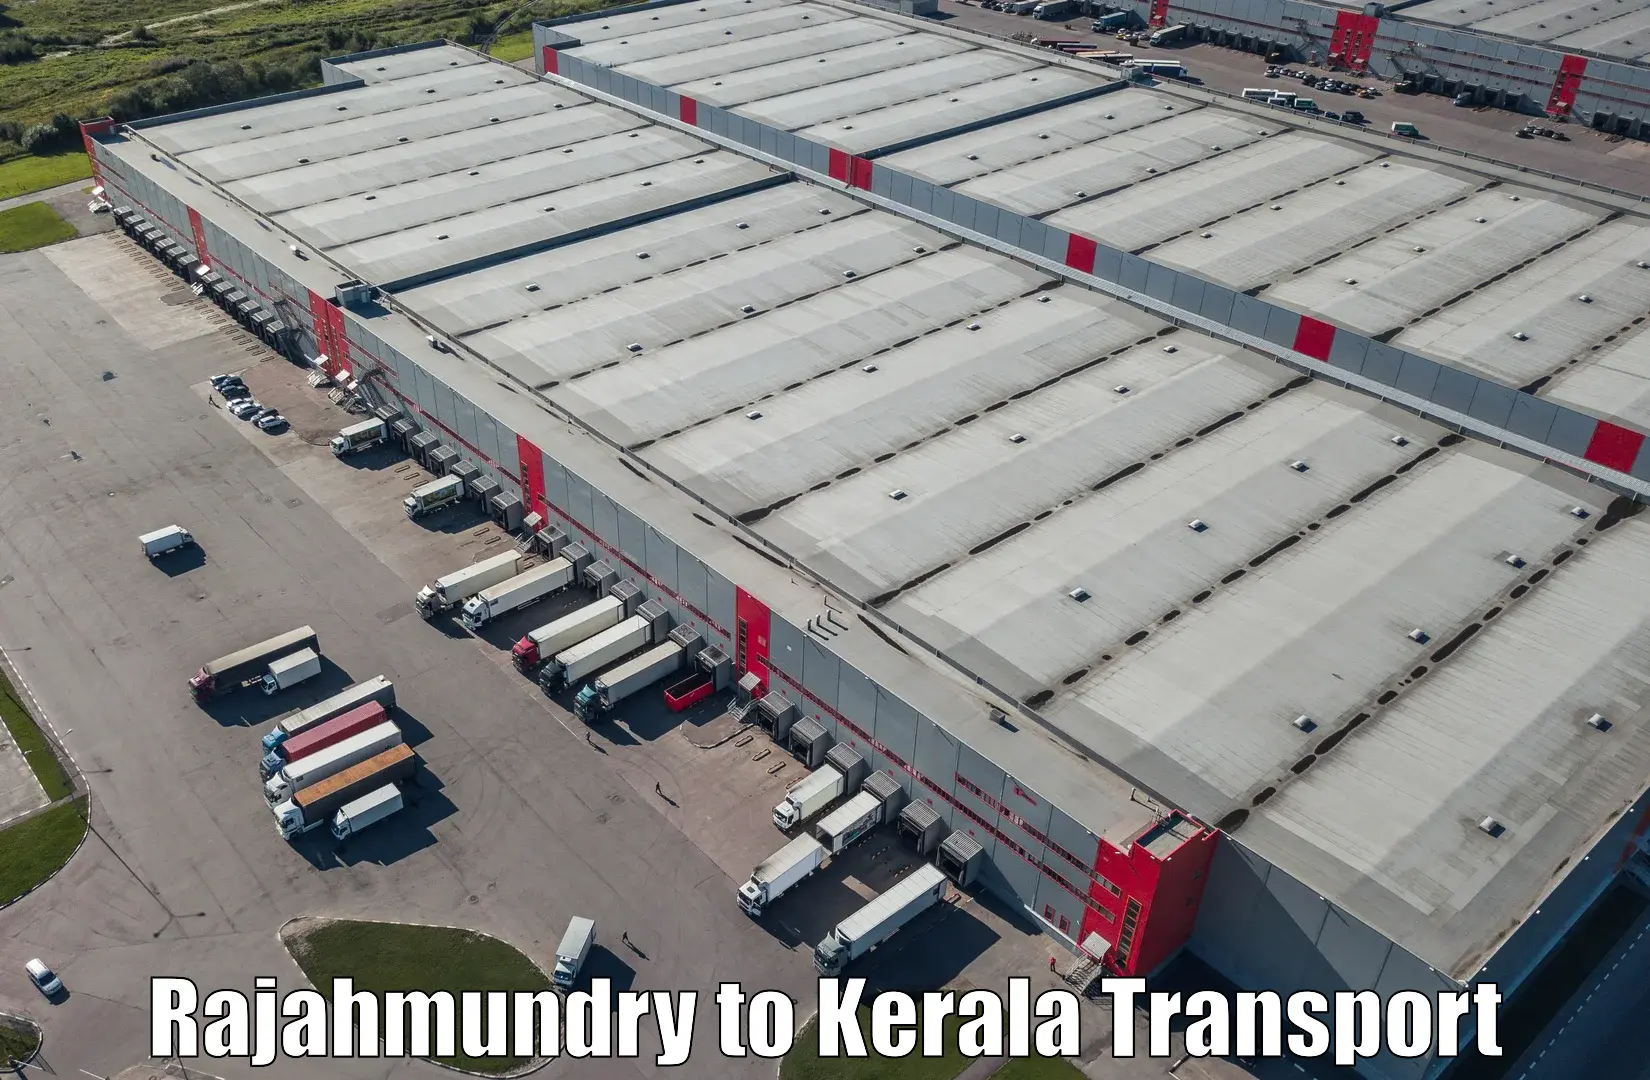 Air cargo transport services Rajahmundry to Ponekkara